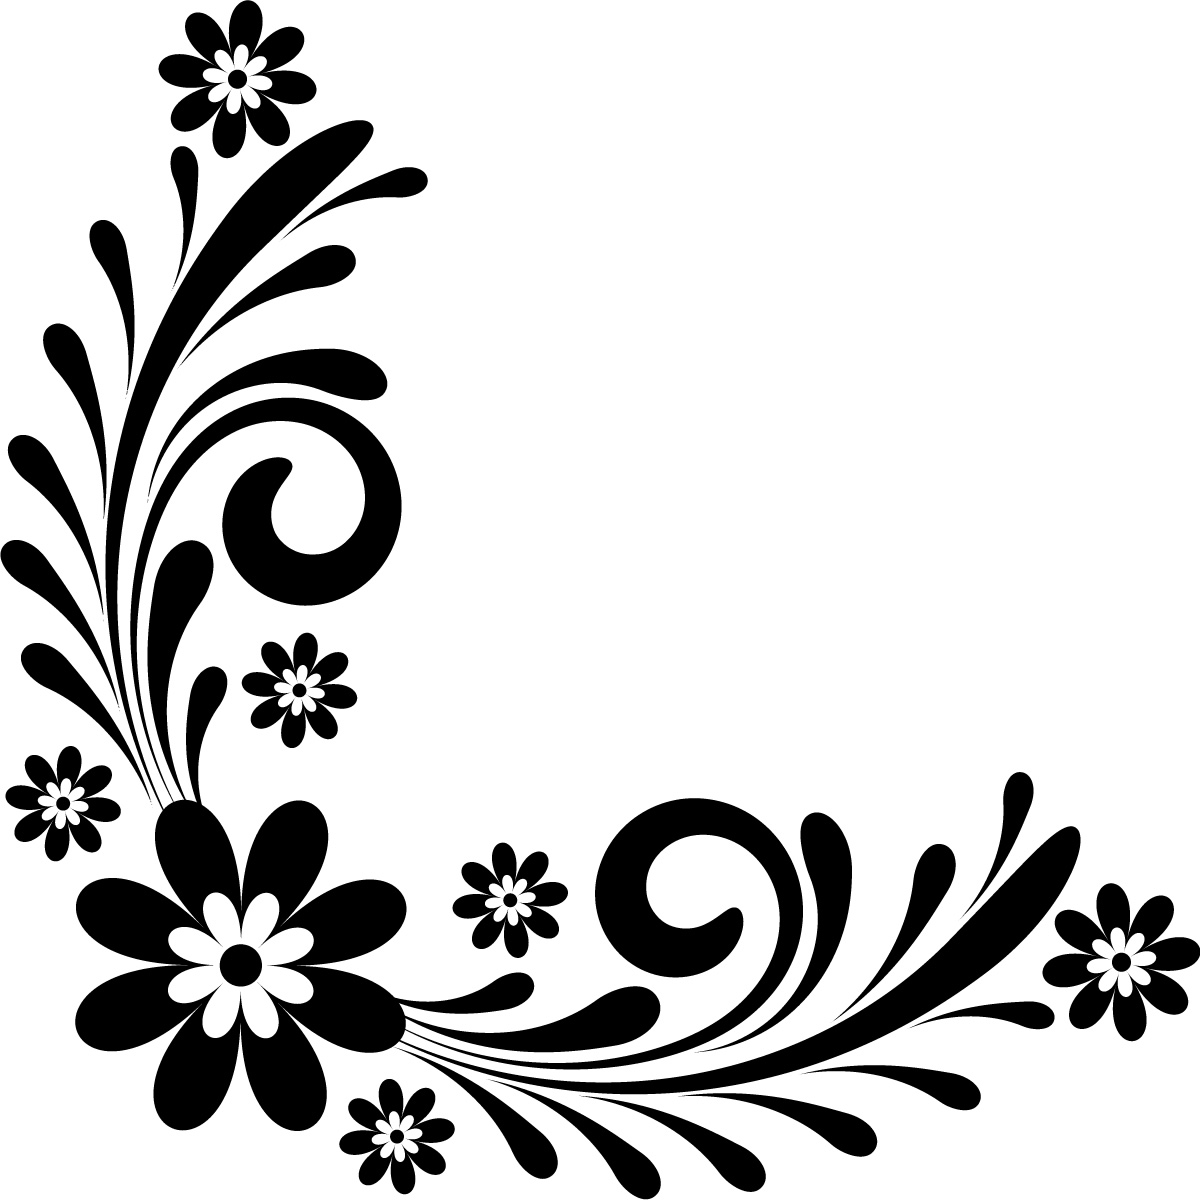 Line art flower design